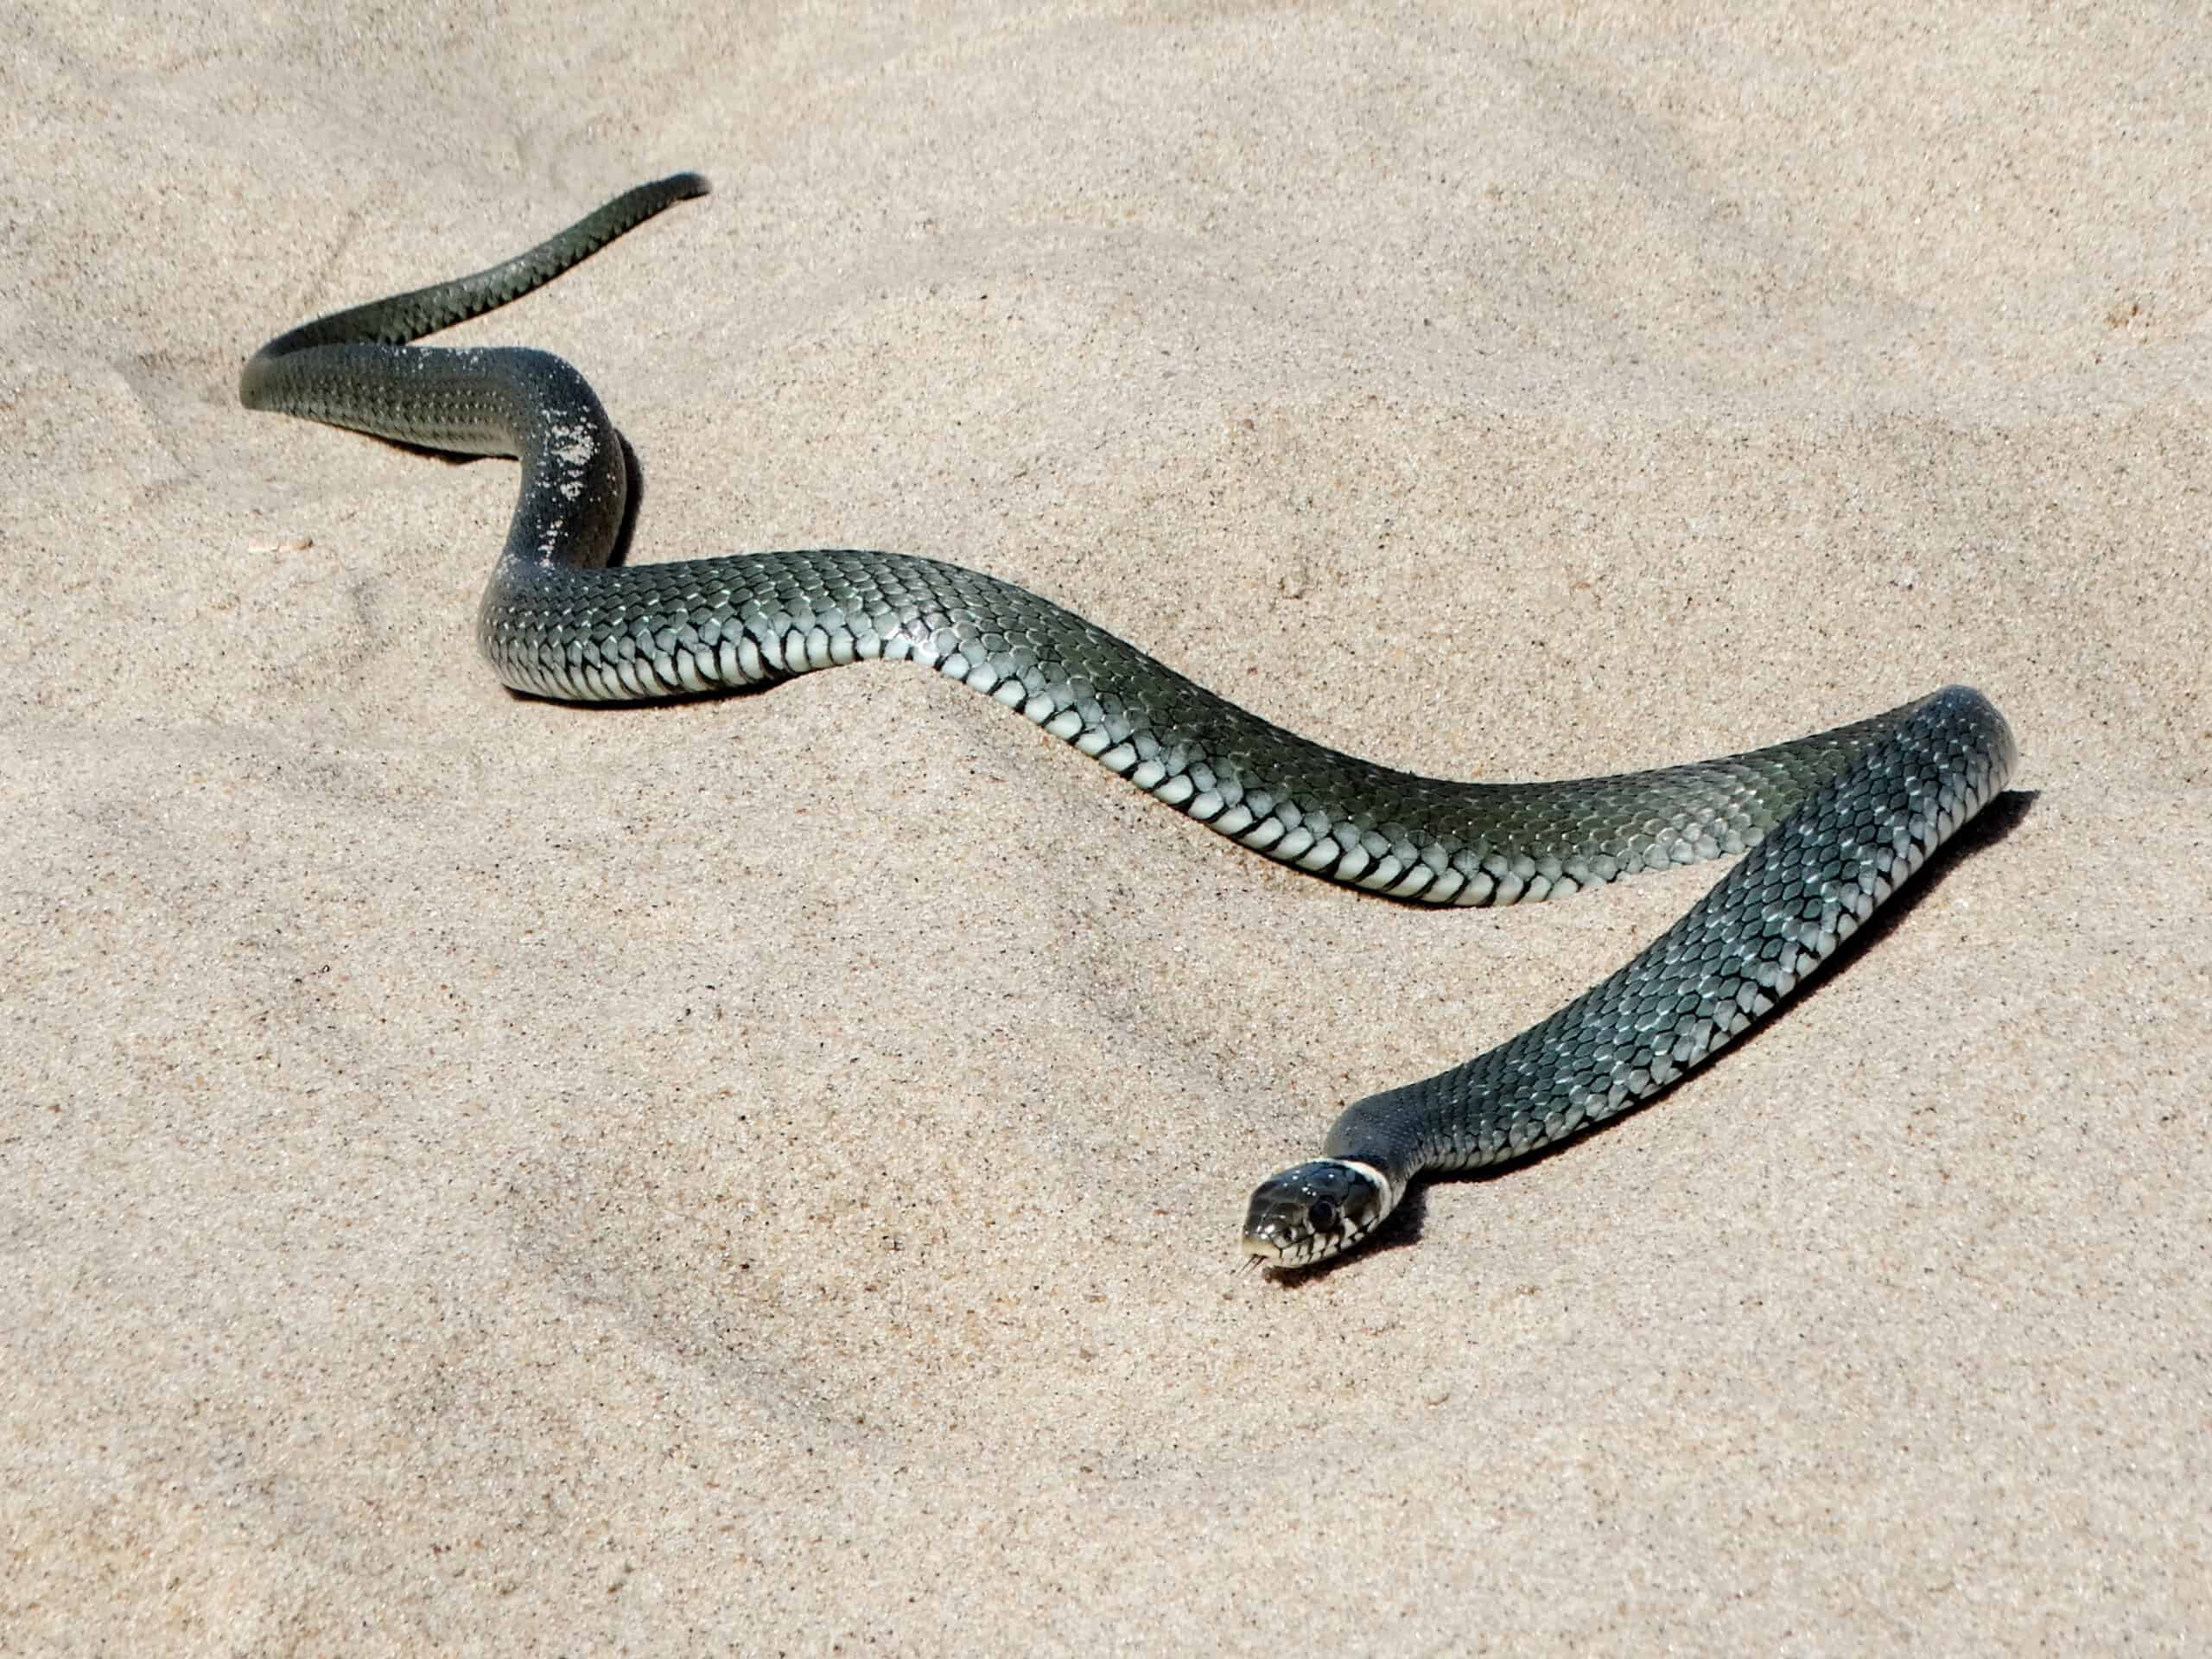 Avistamientos de serpientes en la costa sorprenden a los bañistas